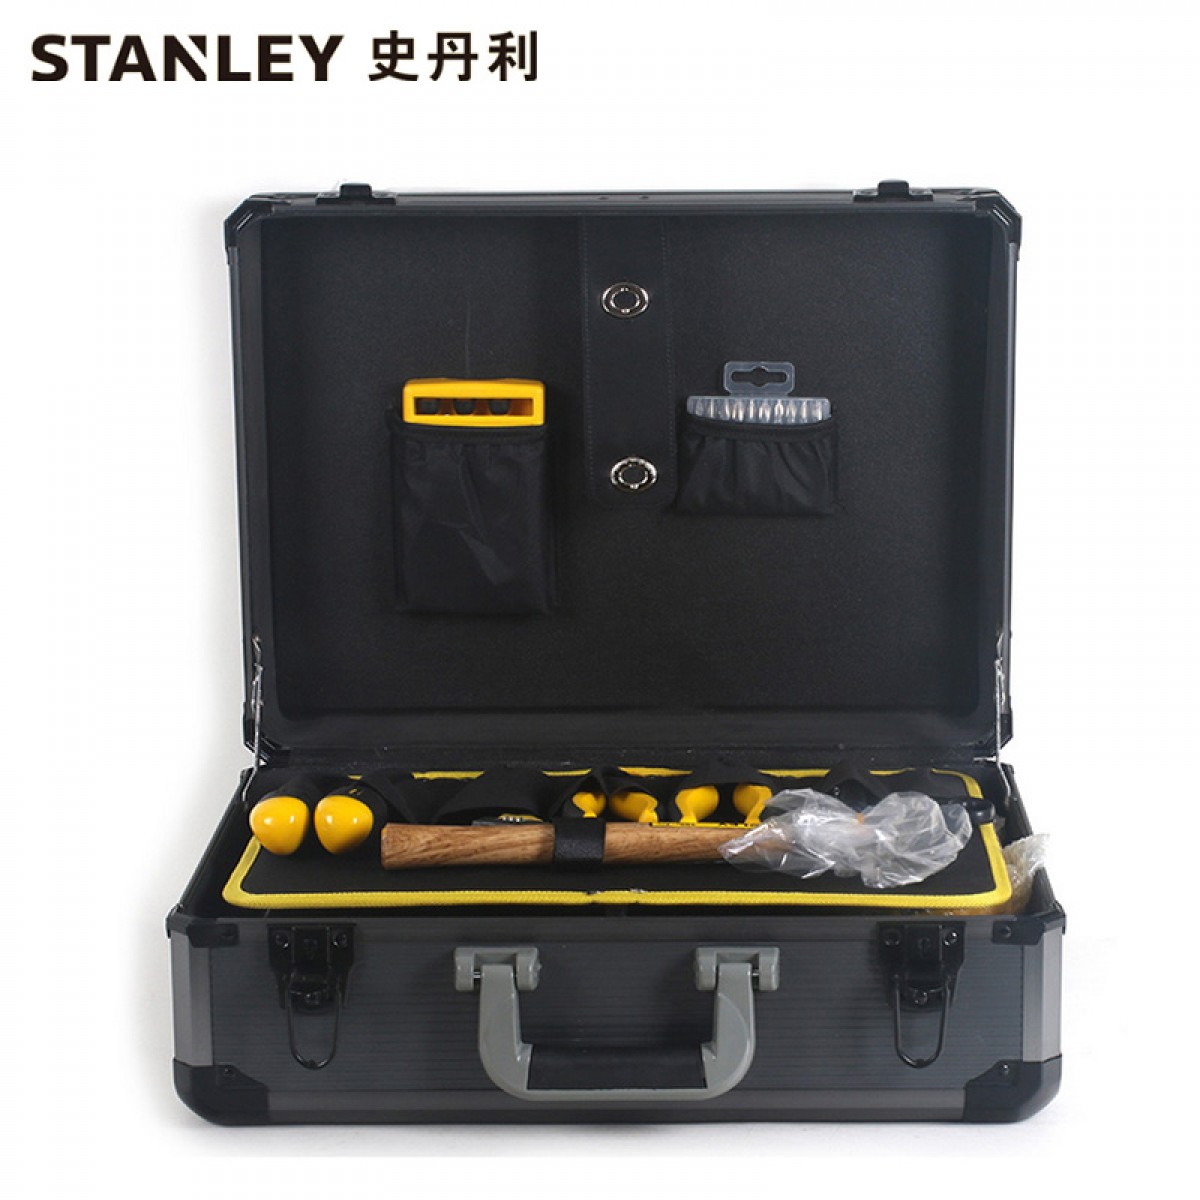 史丹利 CD-83-011-TC 42件万能工具组套